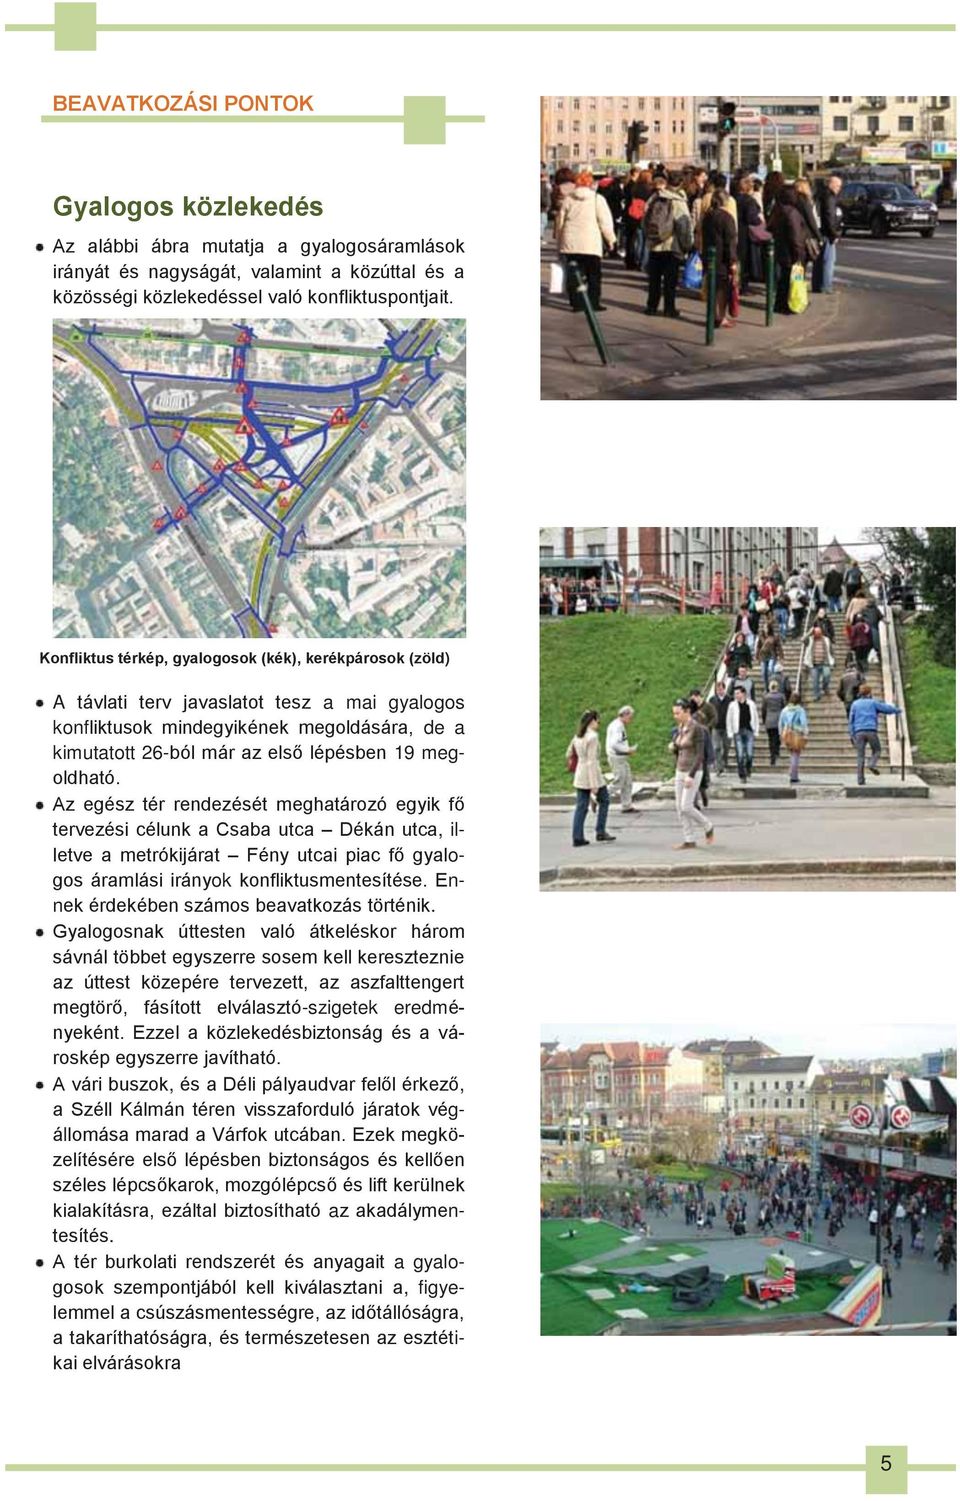 megoldható. Az egész tér rendezését meghatározó egyik fő tervezési célunk a Csaba utca Dékán utca, illetve a metrókijárat Fény utcai piac fő gyalogos áramlási irányok konfliktusmentesítése.